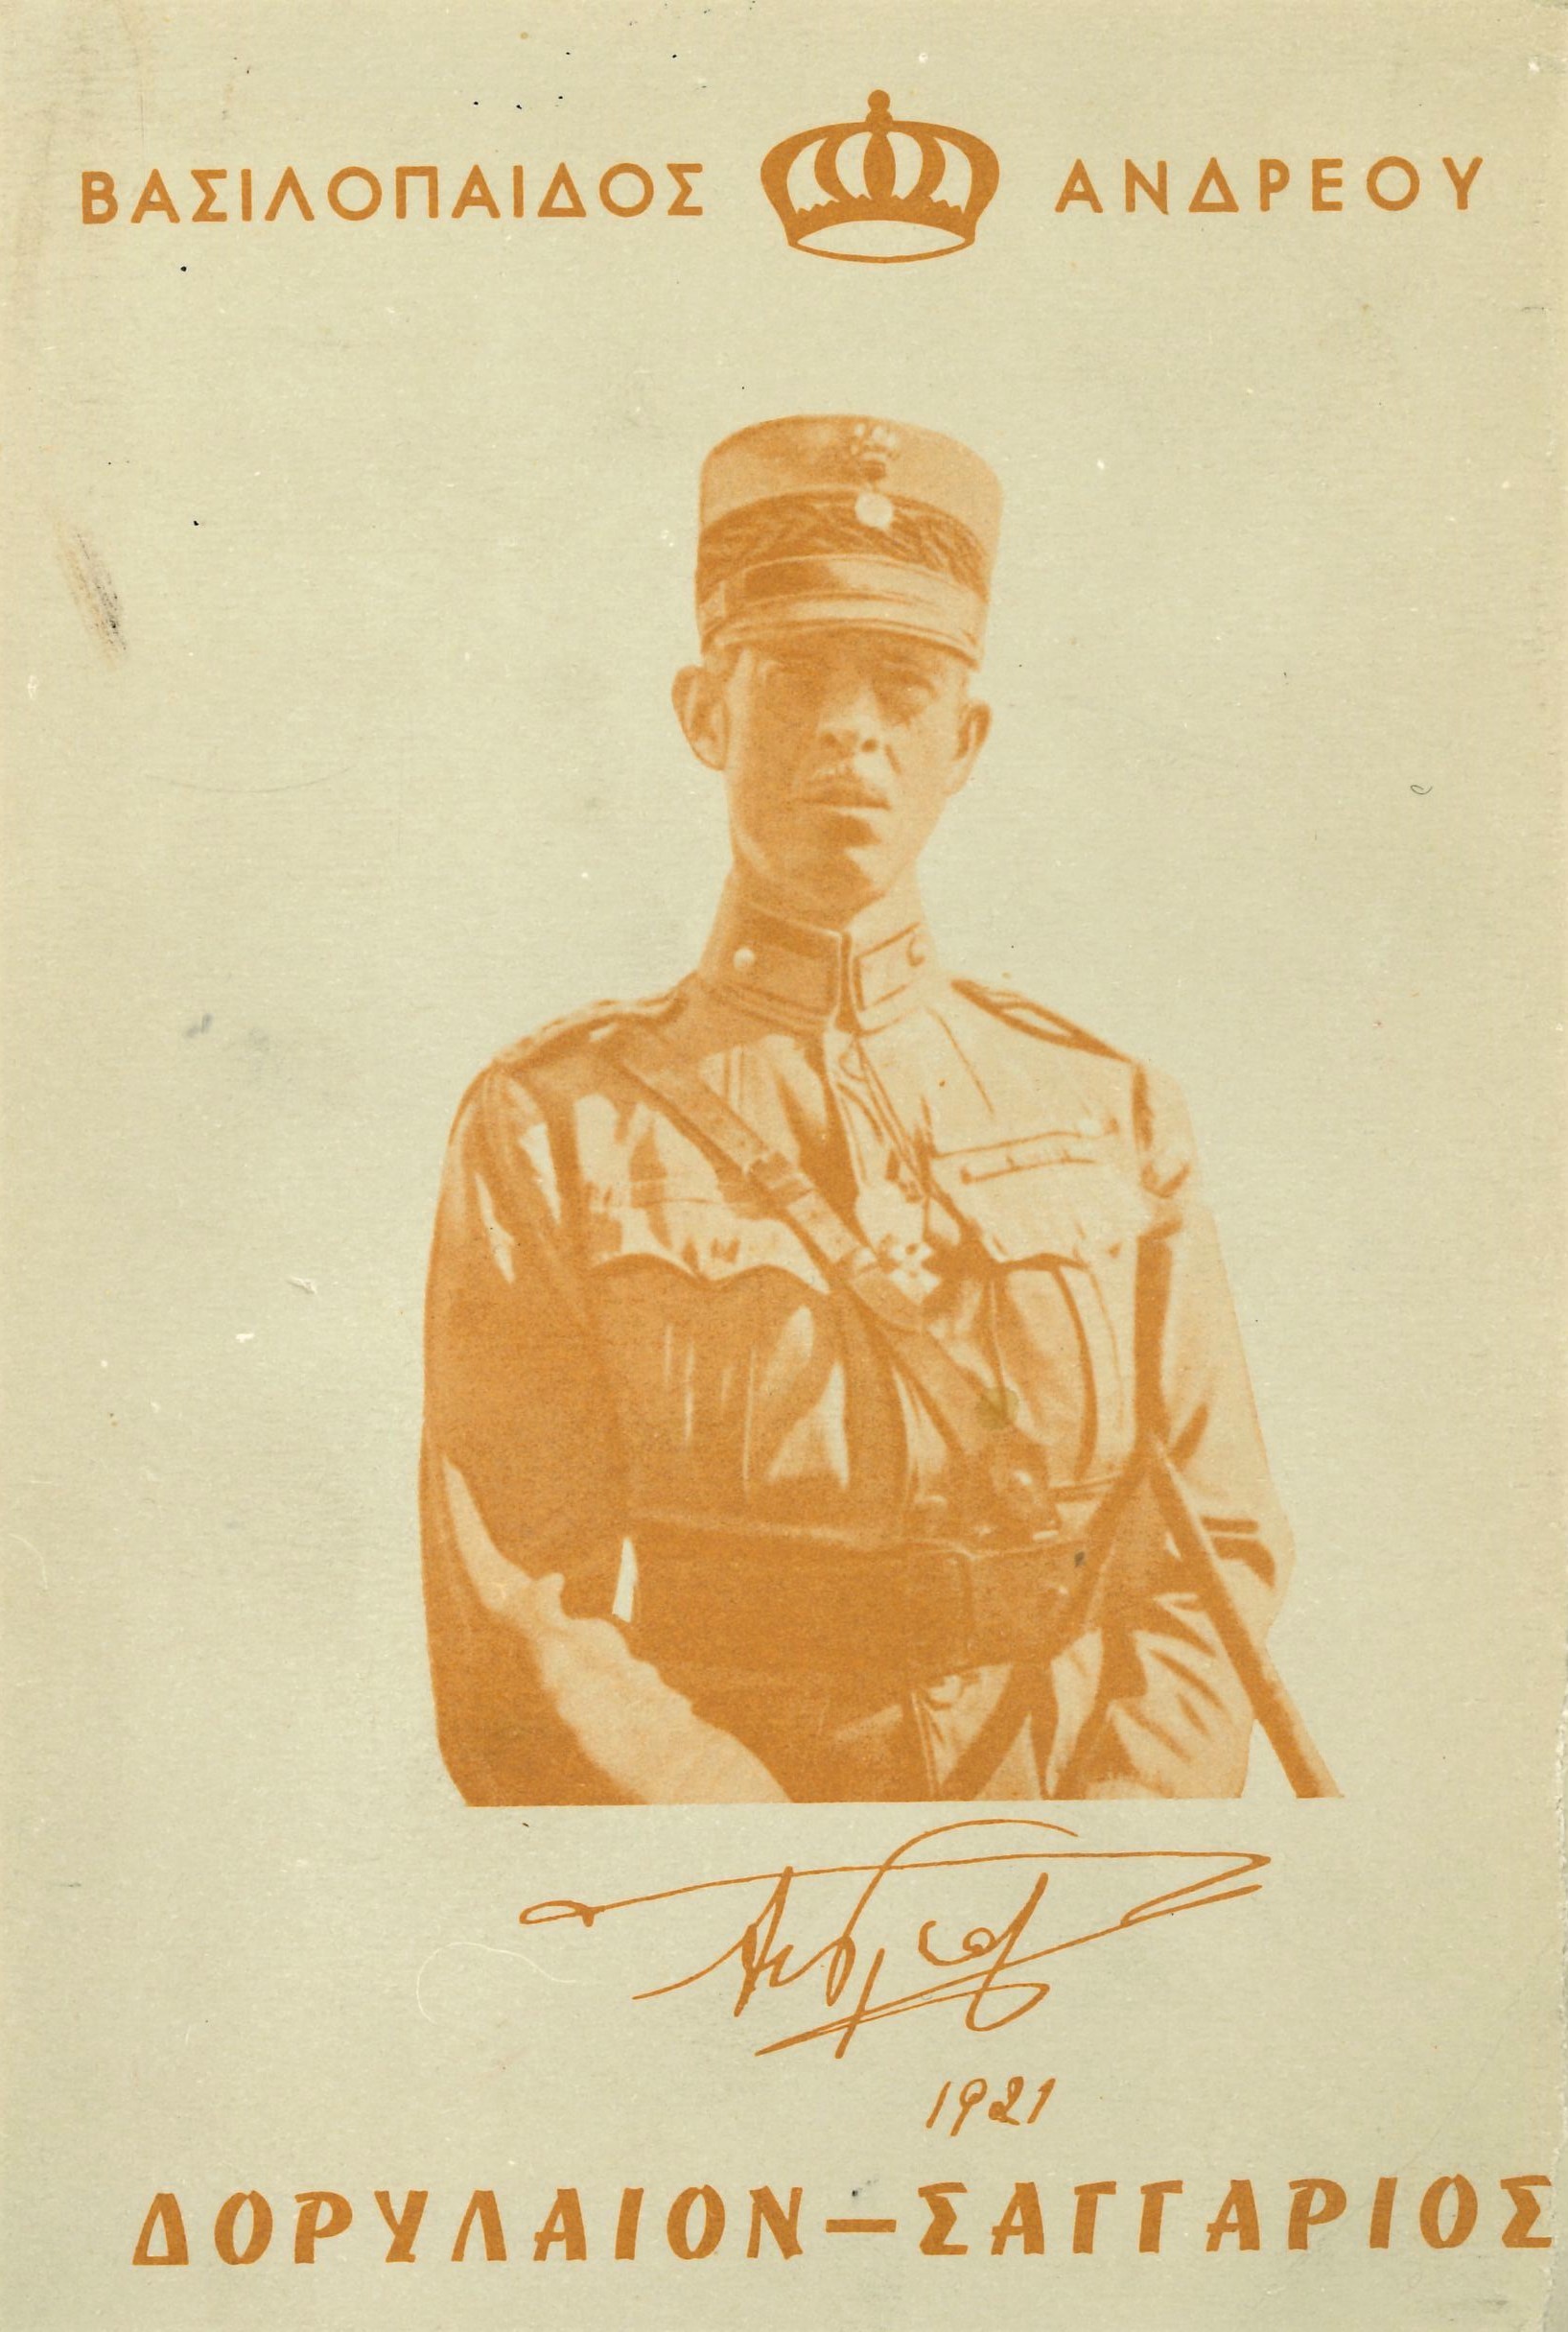 Auf dem Schutzumschlag mit oranger Schrift sieht man in der Mitte das Porträt des Prinzen Andreas von Griechenland in Militäruniform.